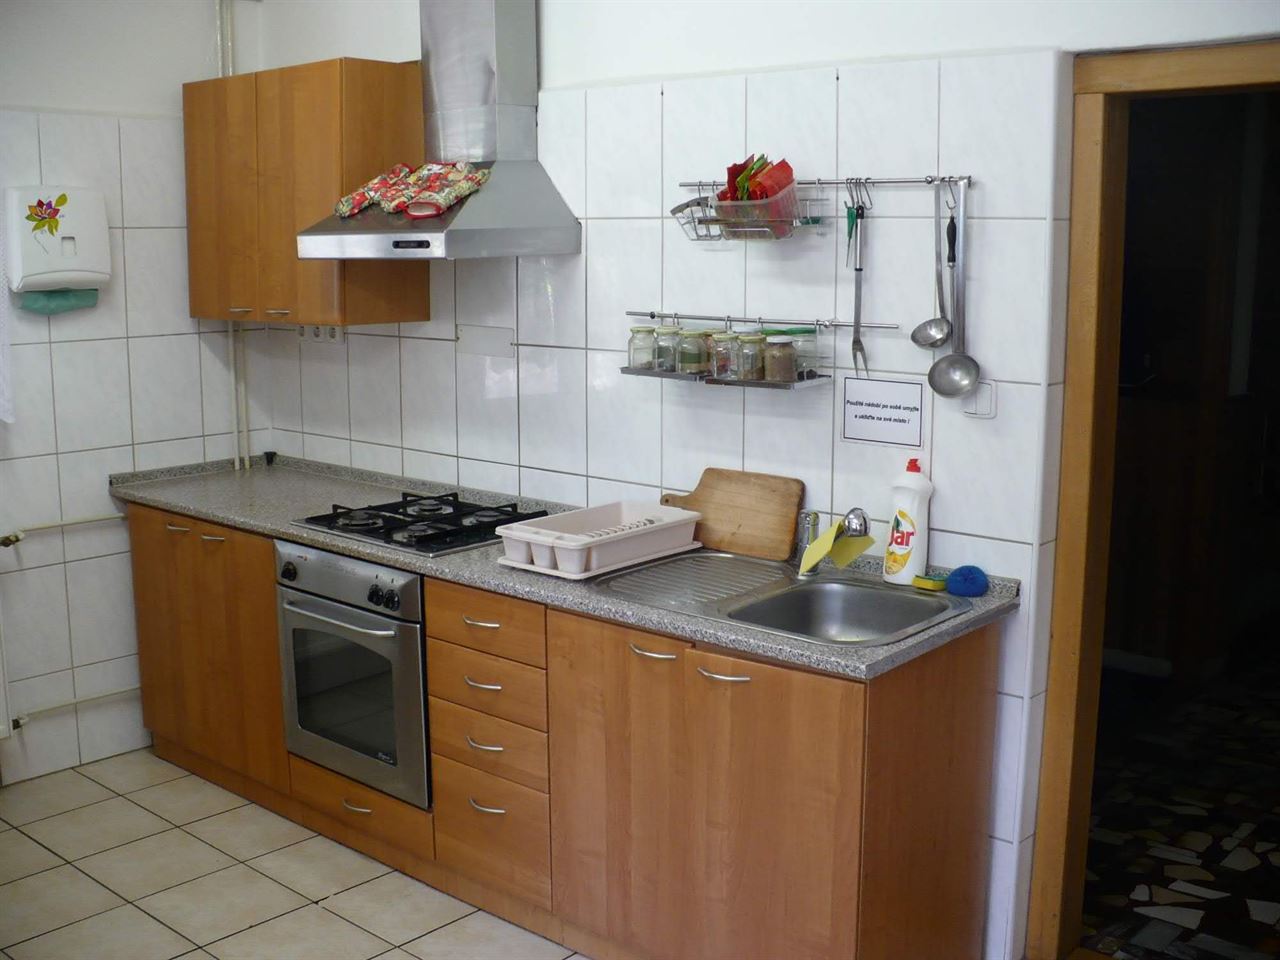 Obrázek - CHATA MILOŇOVÁ - ubytování v Beskydech, Velké Karlovice, SK Miloňová, z. s.